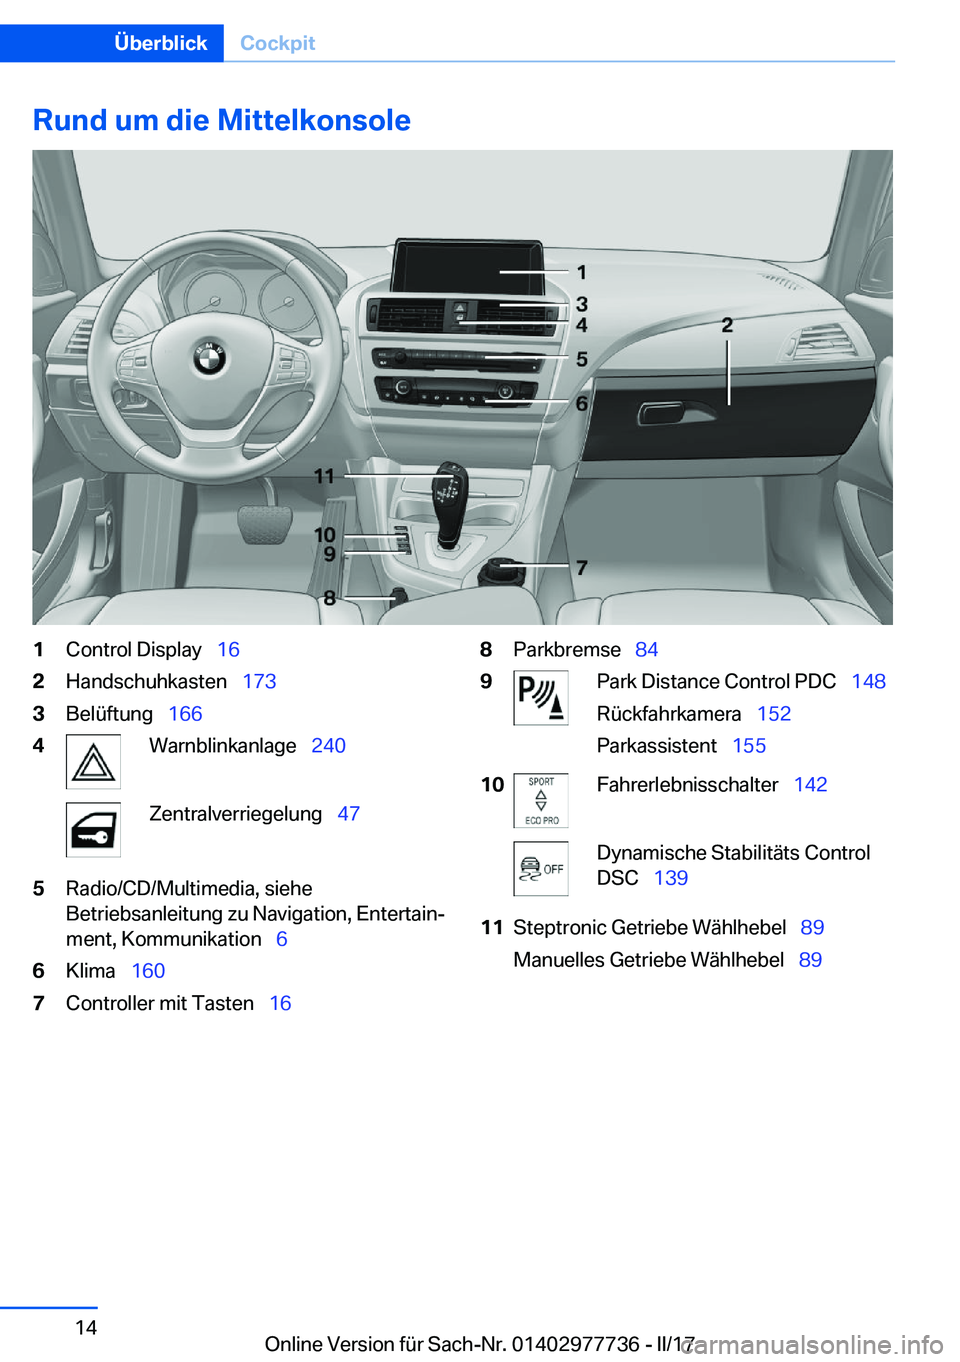 BMW 2 SERIES COUPE 2017  Betriebsanleitungen (in German) �R�u�n�d��u�m��d�i�e��M�i�t�t�e�l�k�o�n�s�o�l�e�1�C�o�n�t�r�o�l� �D�i�s�p�l�a�y\_�1�6�2�H�a�n�d�s�c�h�u�h�k�a�s�t�e�n\_ �1�7�3�3�B�e�l�